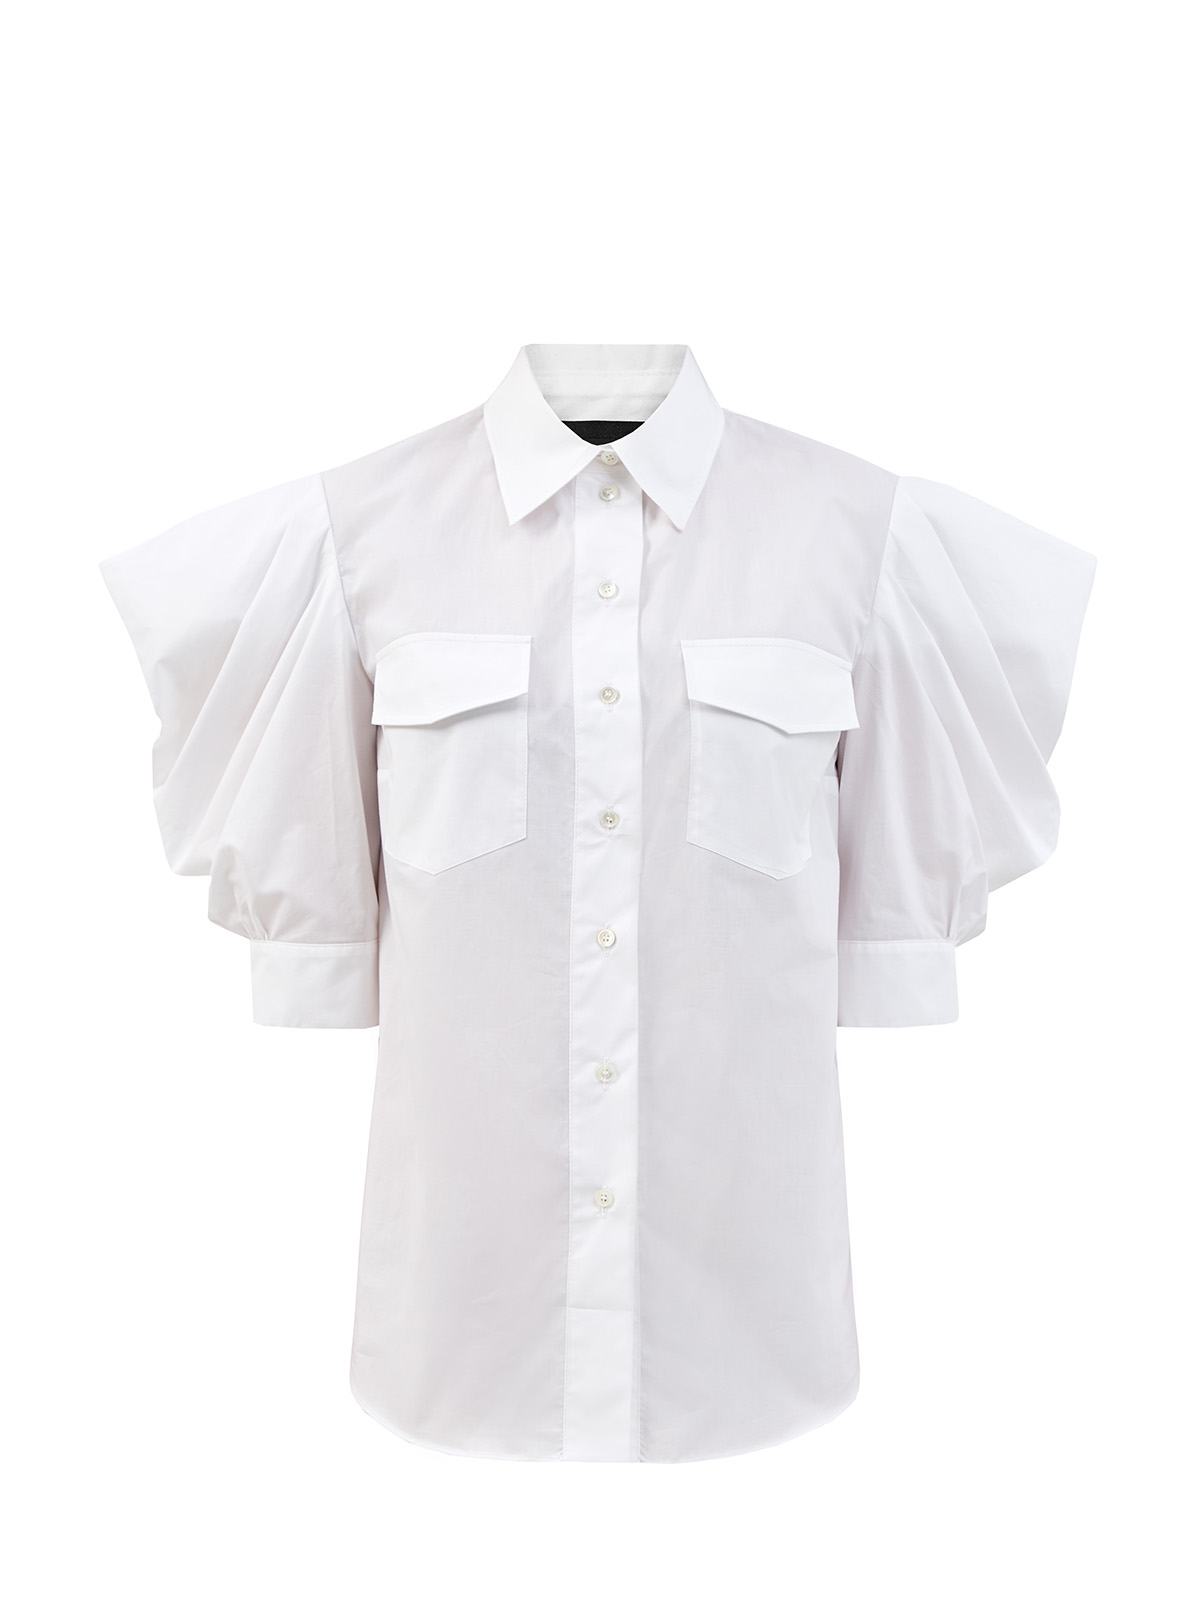 Хлопковая блуза с короткими архитектурными рукавами